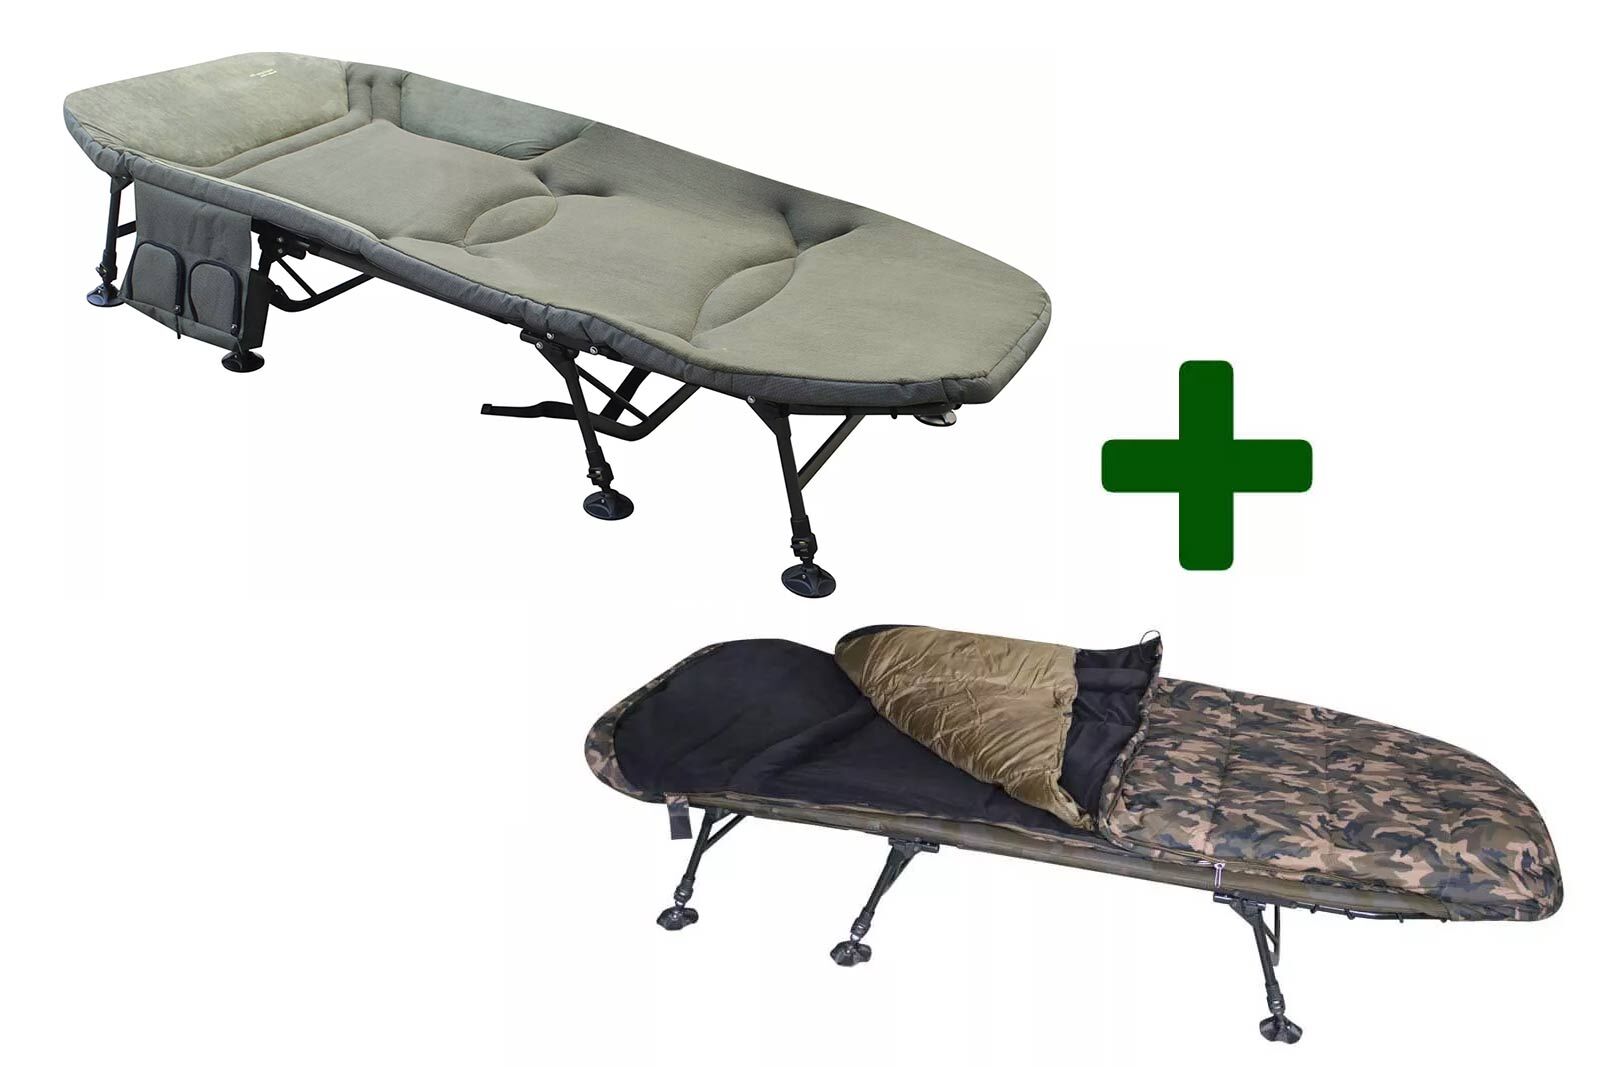 Dieses Set Angebot beinhaltet eine großes Giant Bedchair sowie den MK Camo 2in1 Schlafsack.